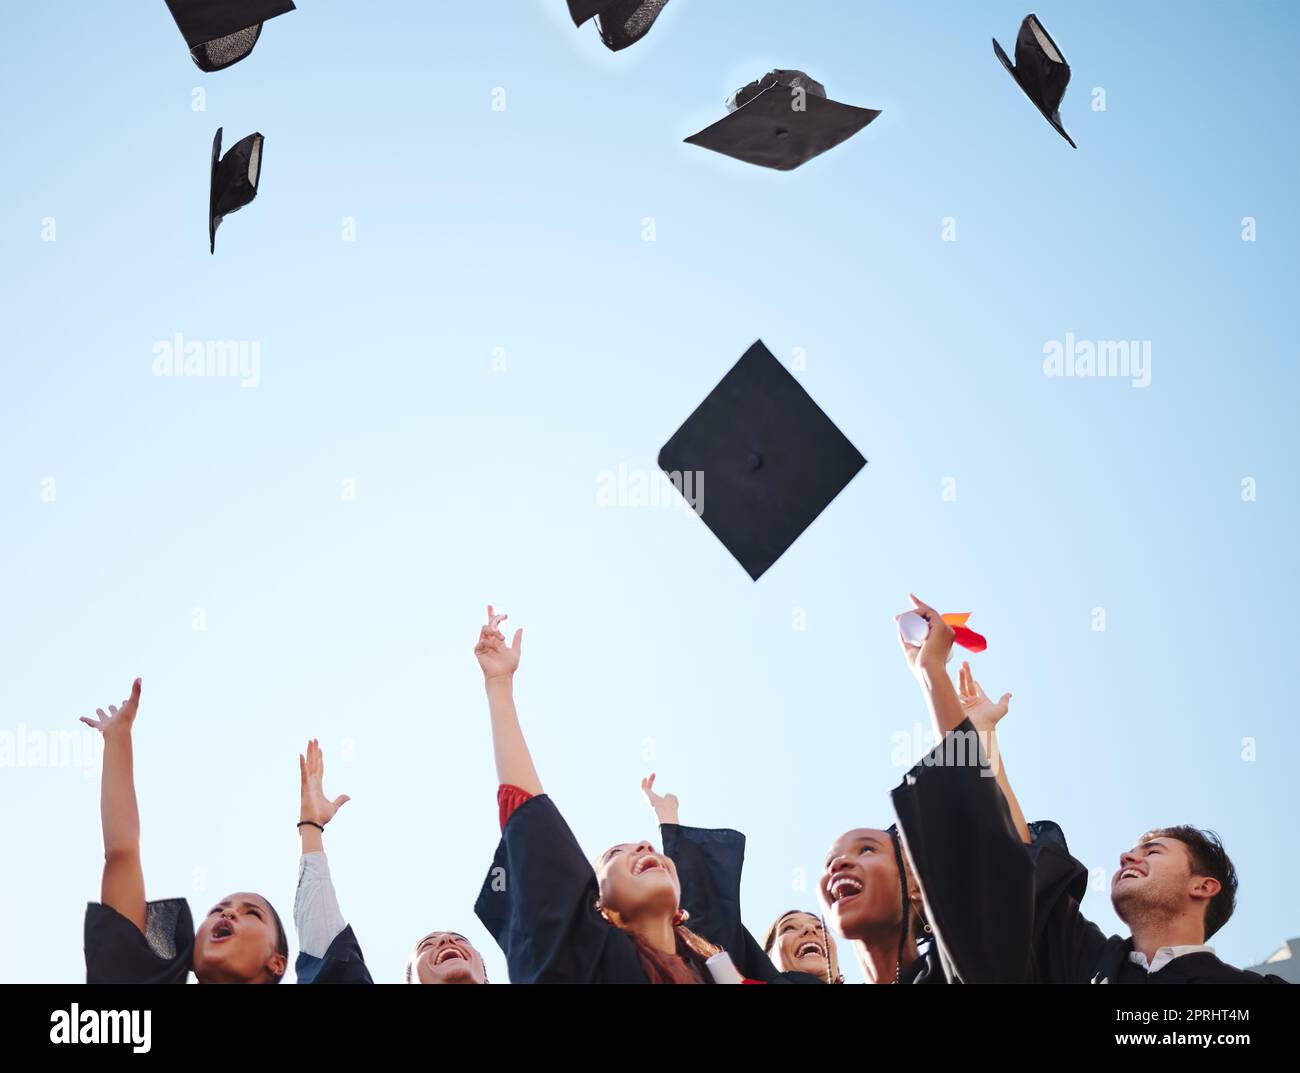 Abschlussfeier, Studenten und Graduiertenklasse werfen bei der Zeremonie Kappen in die Luft und freuen sich über den Bildungserfolg. Universität oder Hochschule Männer und Frauen d Stockfoto